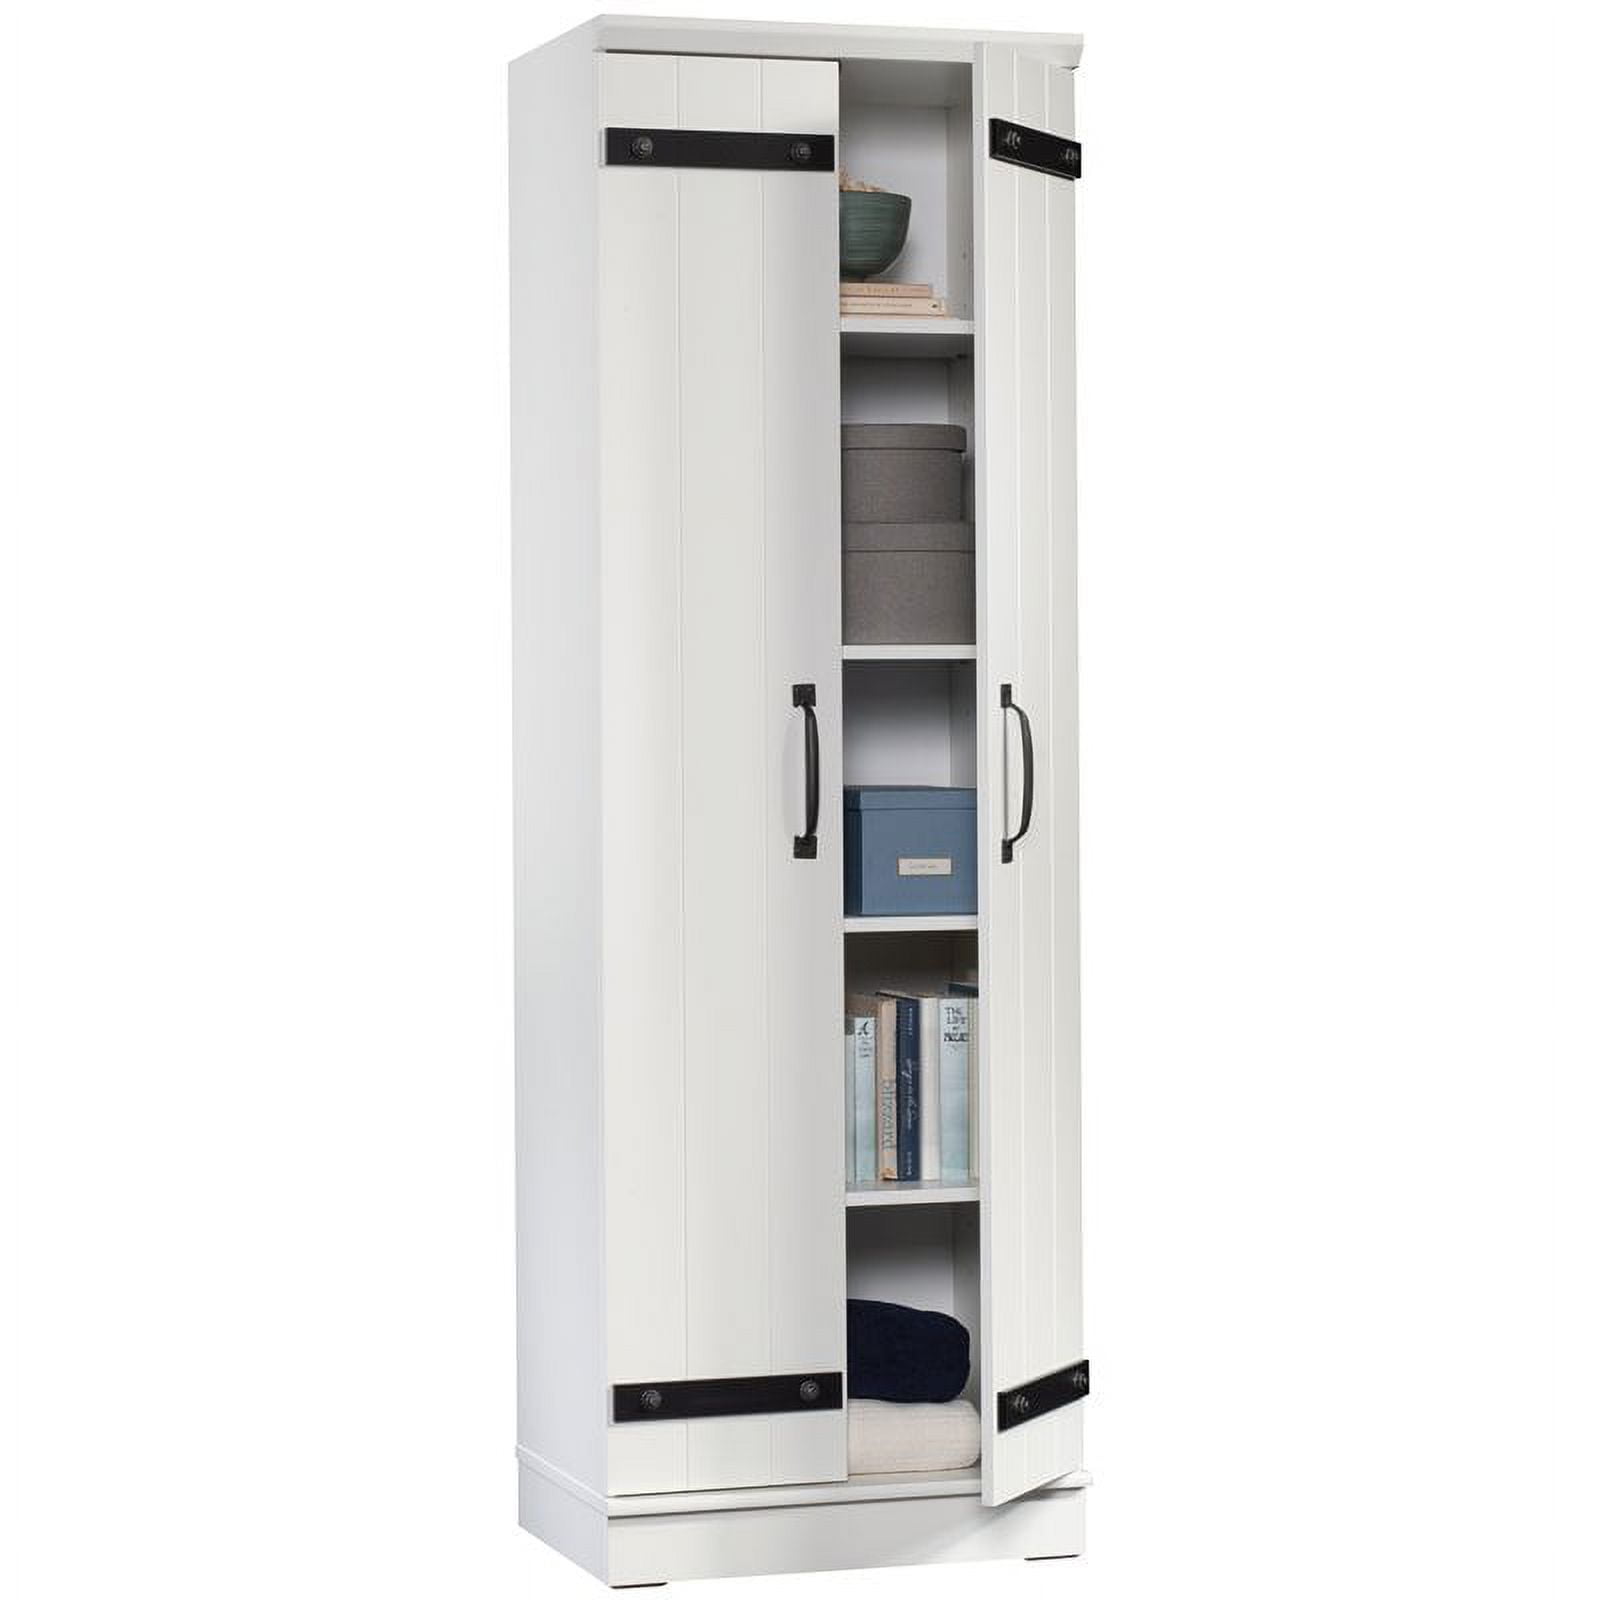 Sauder HomePlus 2-Door Kitchen Pantry Cabinet in Soft White, 1 - Kroger